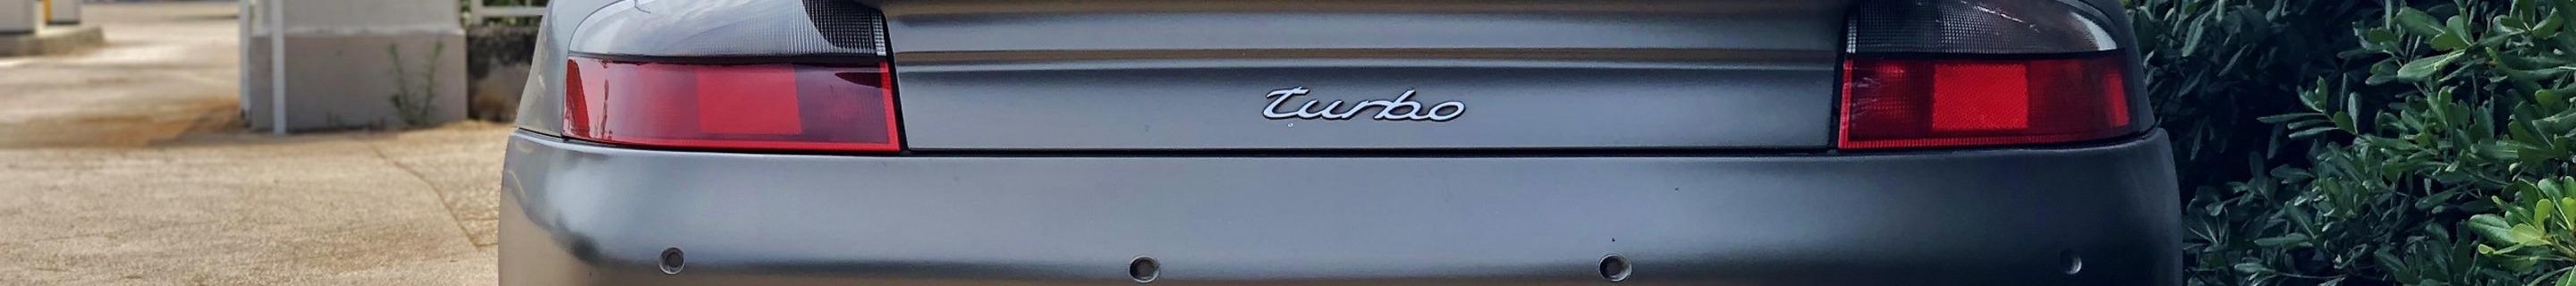 Porsche 996 Turbo Cabriolet